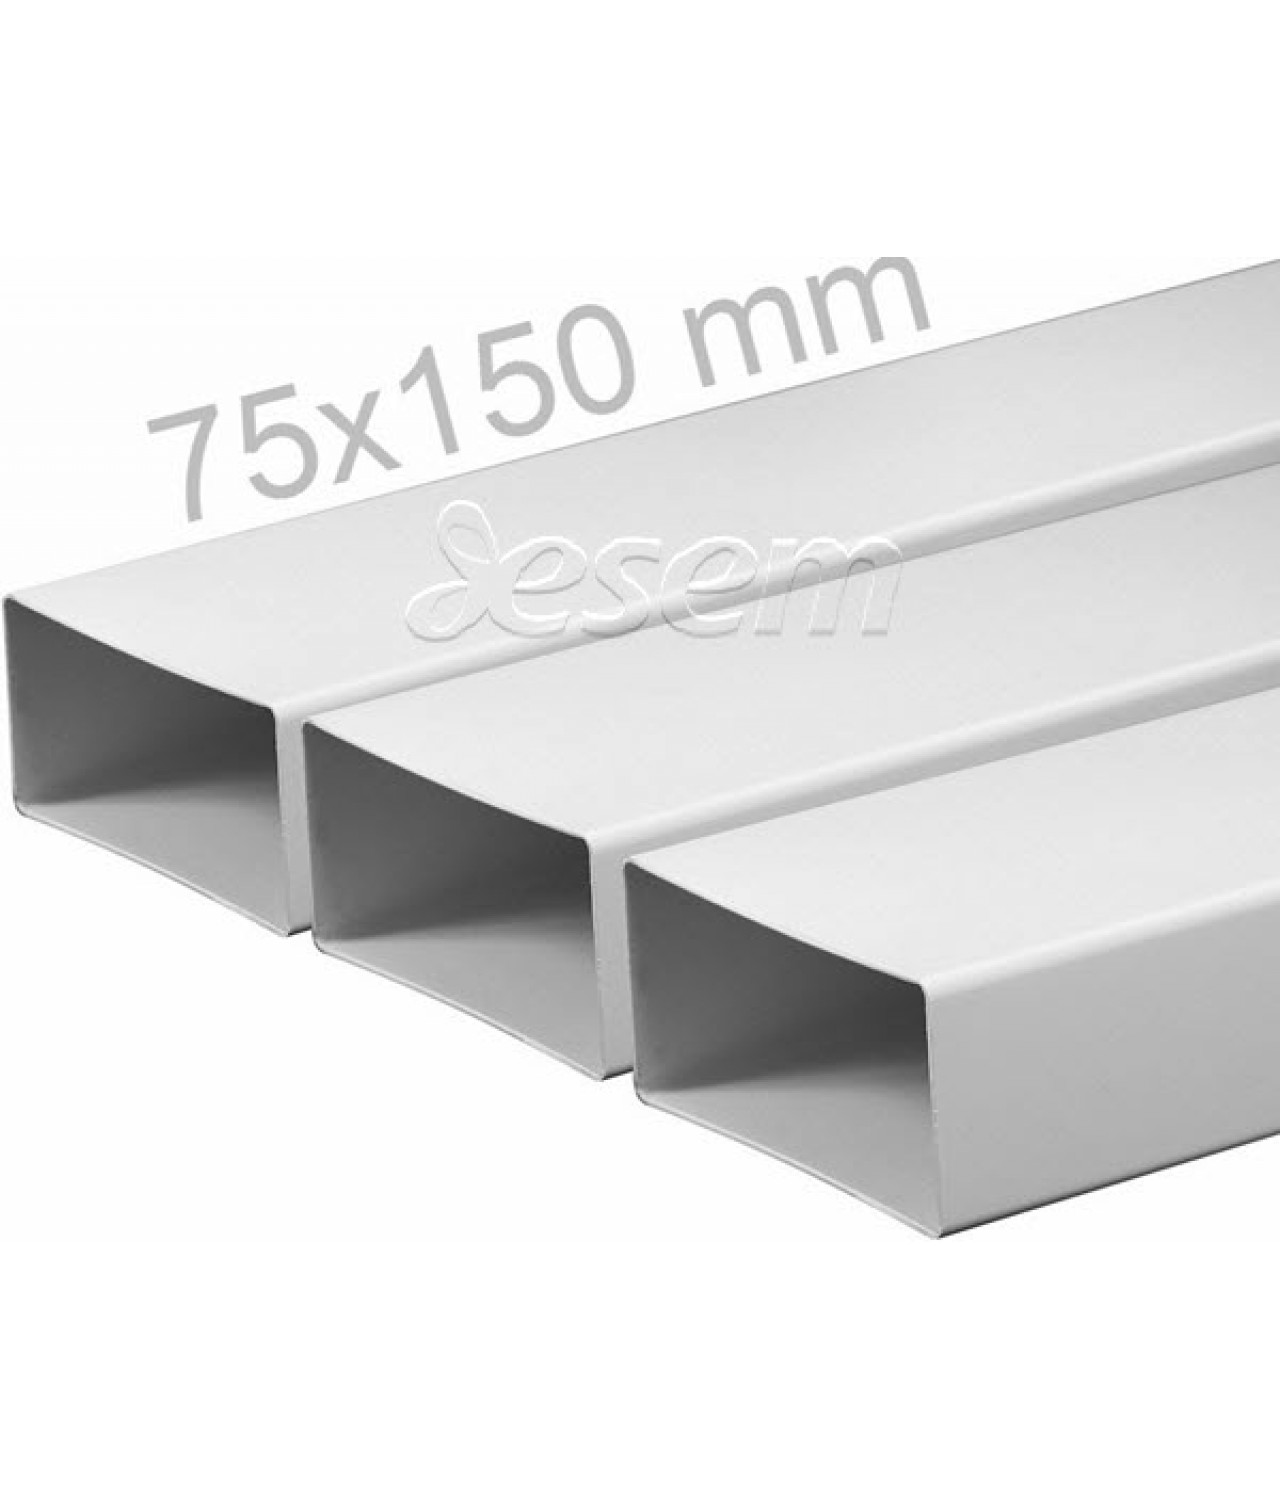 Plastic flat ducts EKO-P 55x110 mm